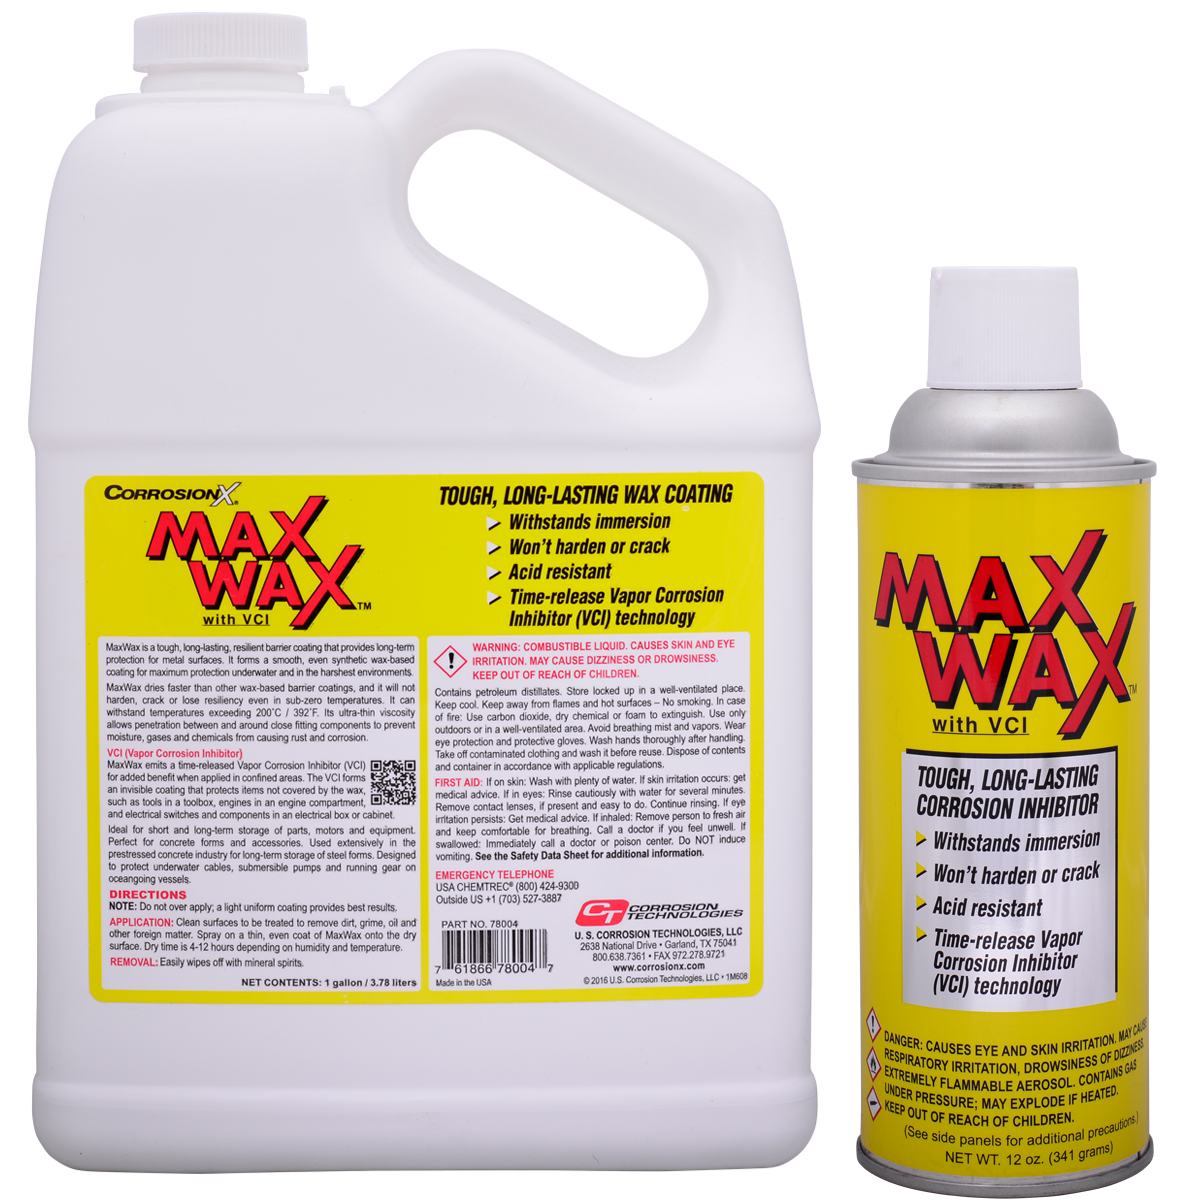 Recubrimiento preventivo contra la corrosión duradero y seco MaxWax